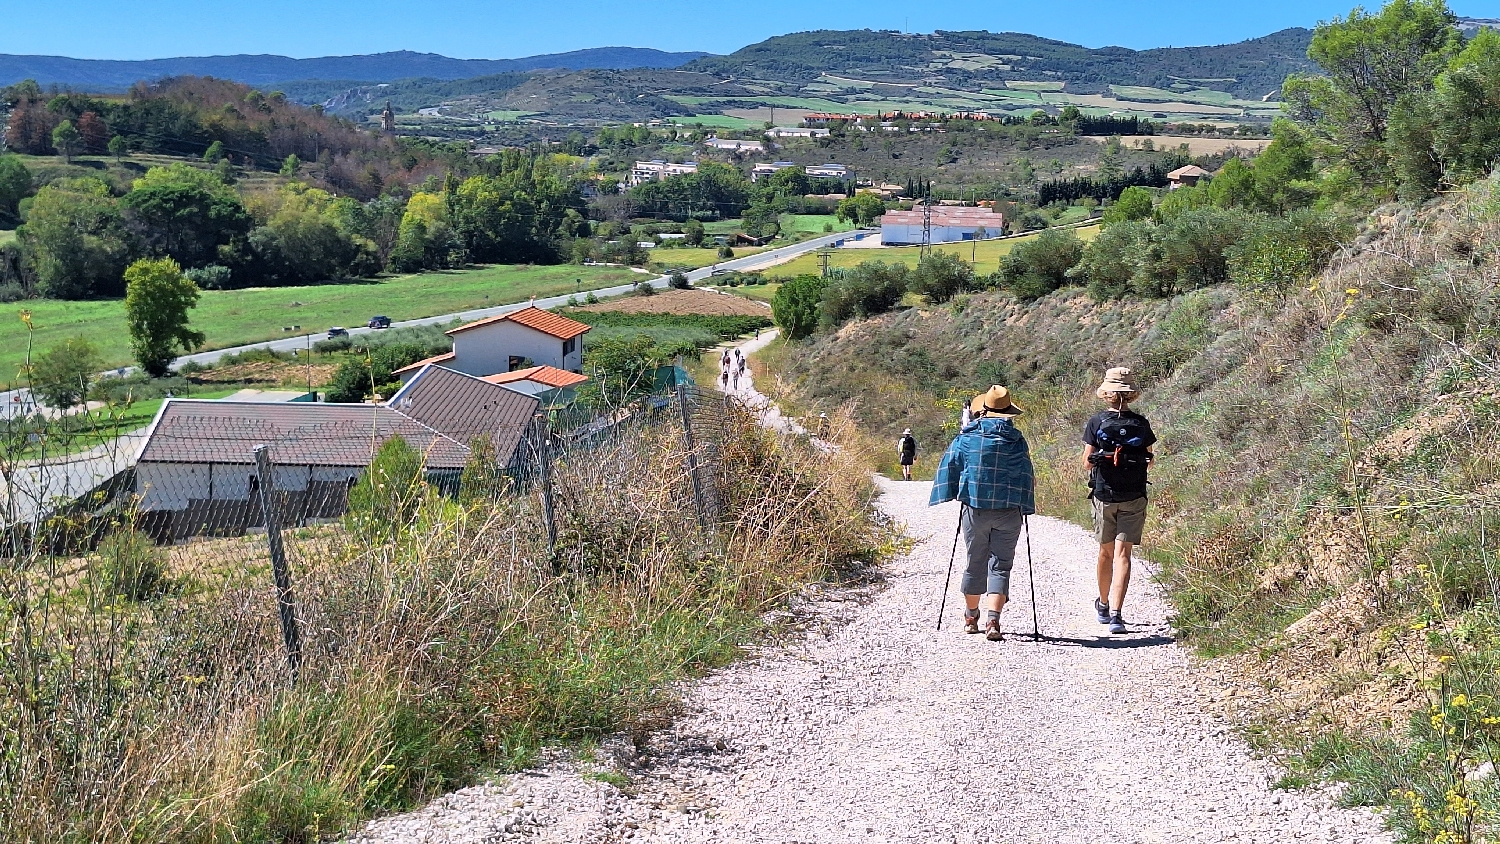 El Camino, Aragon út, Francia út, Óbanos után már sok zarándok gyalogol a következő település felé